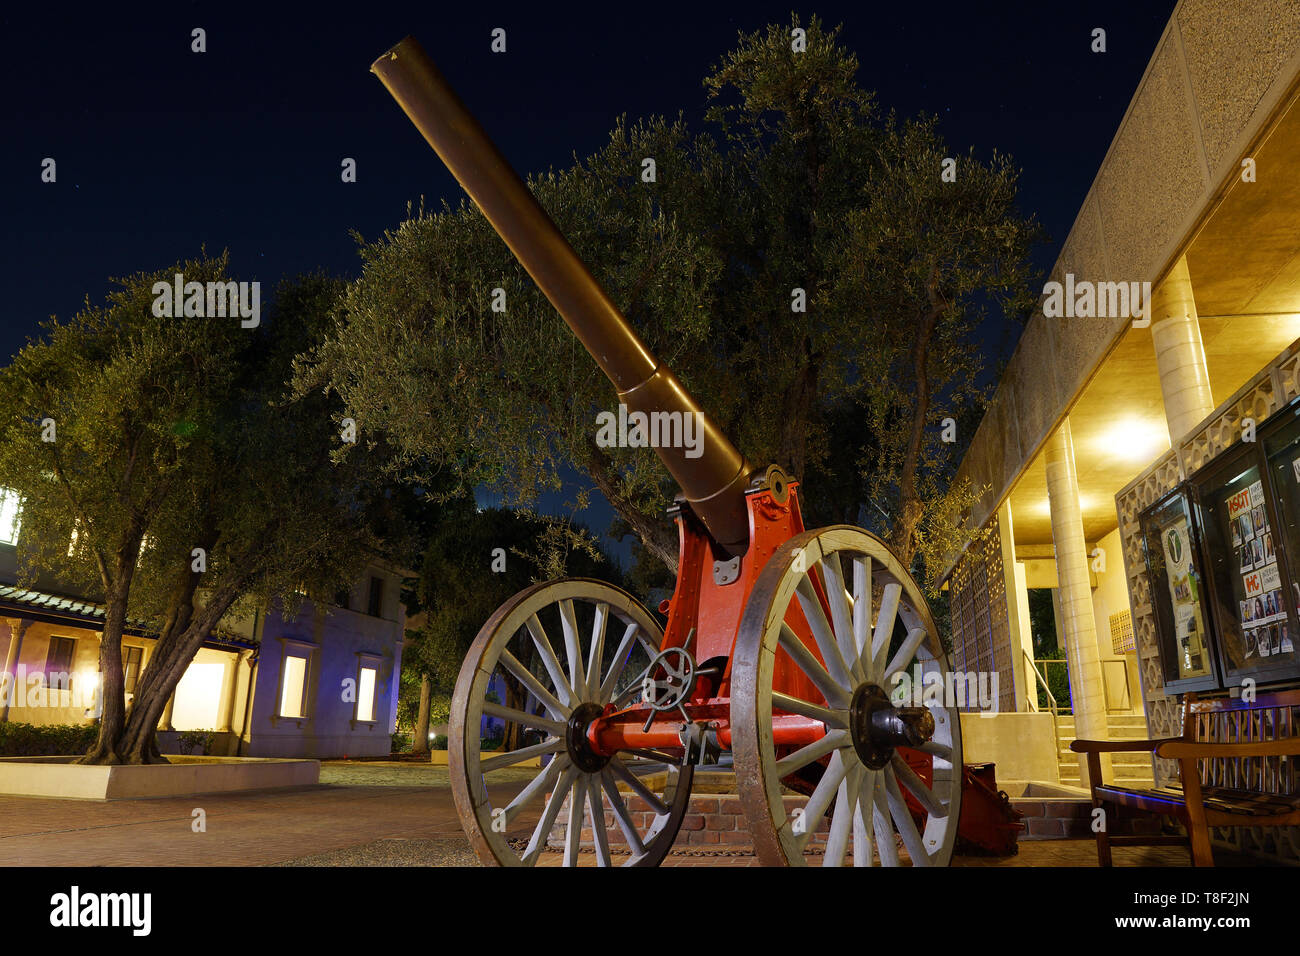 Le Fleming Cannon sur pied d'olive, Caltech Banque D'Images